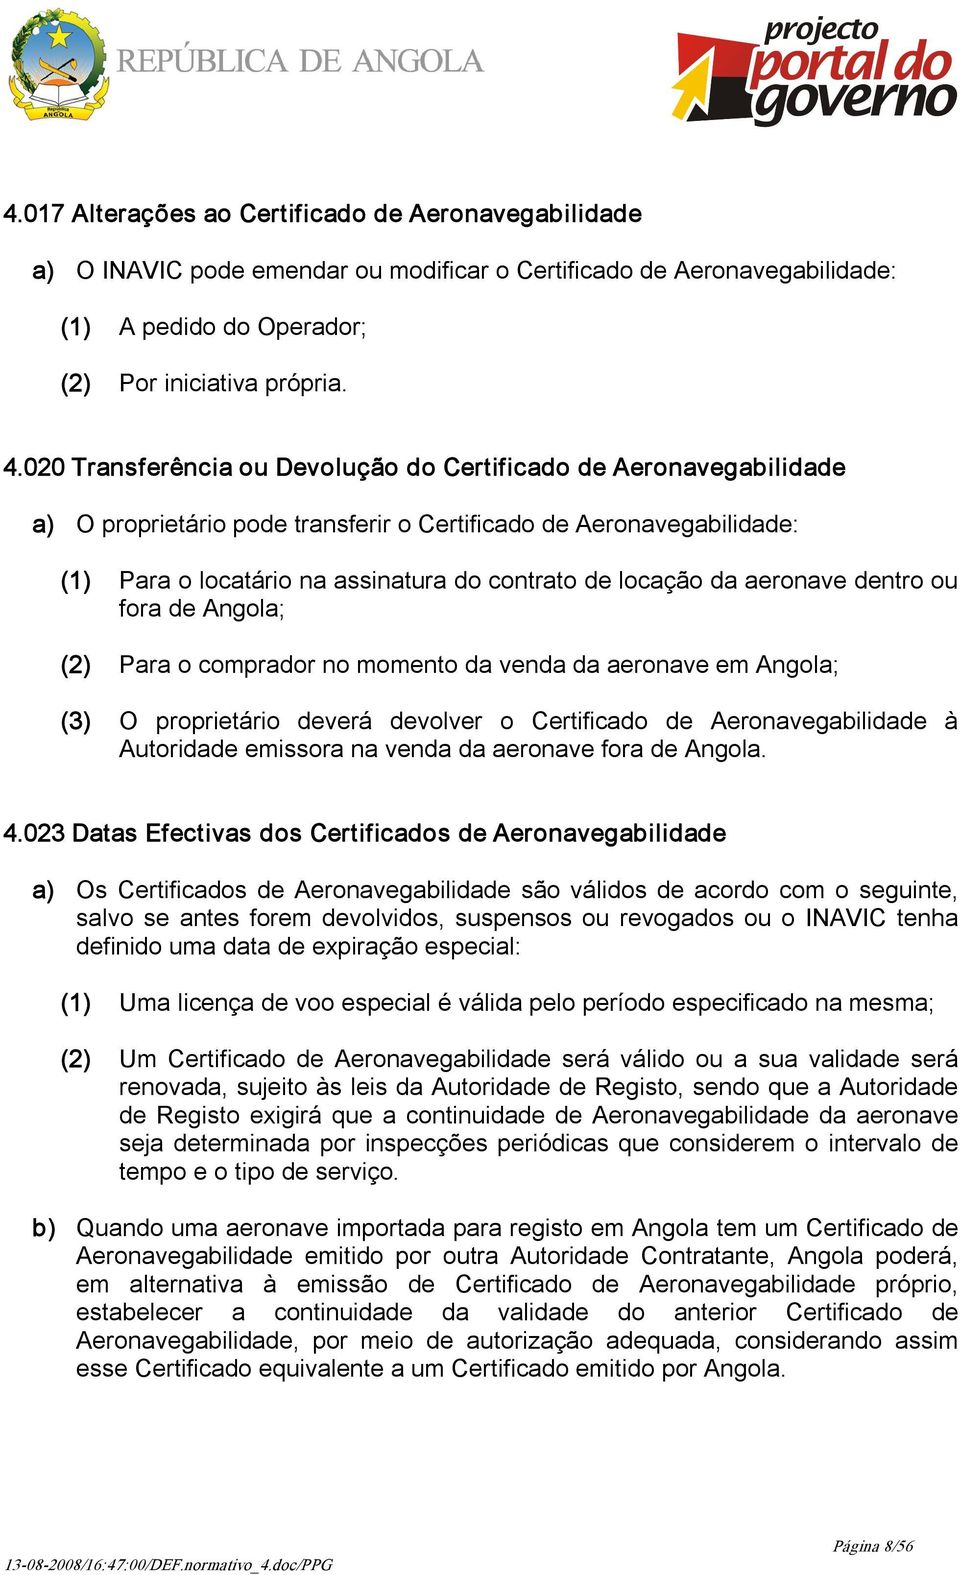 aeronave dentro ou fora de Angola; (2) Para o comprador no momento da venda da aeronave em Angola; (3) O proprietário deverá devolver o Certificado de Aeronavegabilidade à Autoridade emissora na